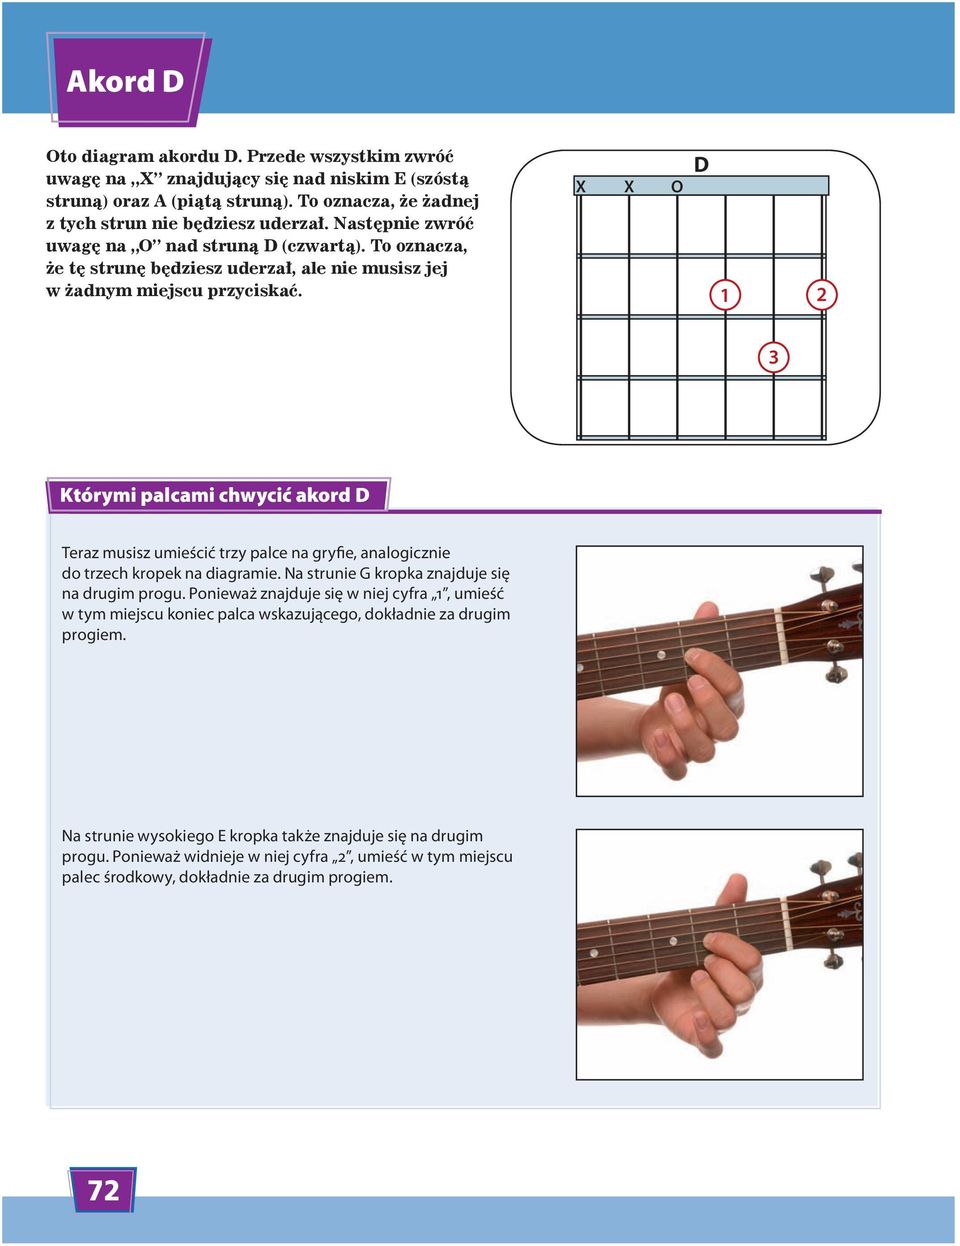 1 2 3 Którymi palcami chwycić akord D Teraz musisz umieścić trzy palce na gryfie, analogicznie do trzech kropek na diagramie. Na strunie G kropka znajduje się na drugim progu.